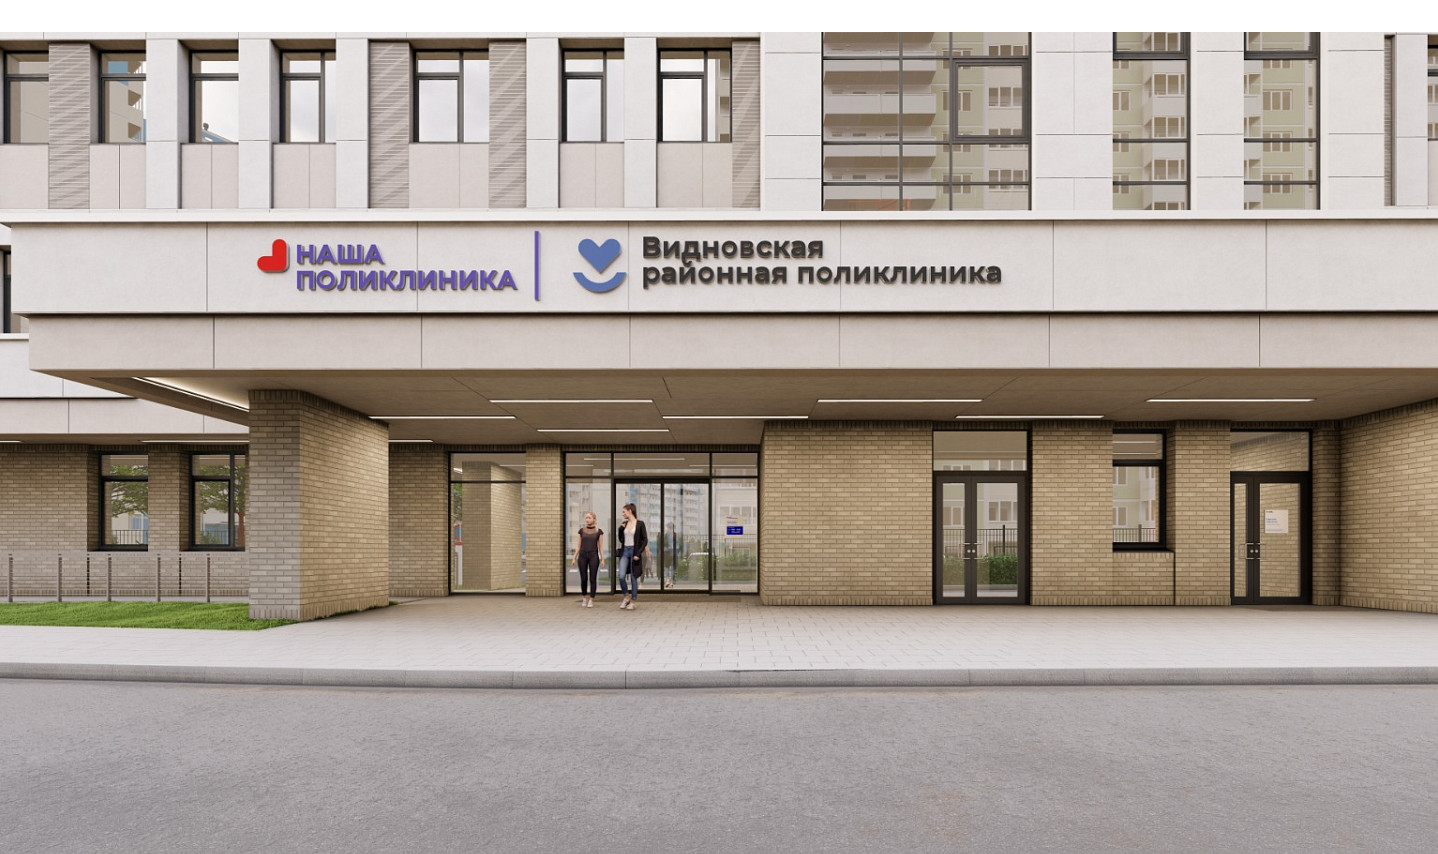 Поликлинику на 750 посещений в смену строят в деревне Сапроново